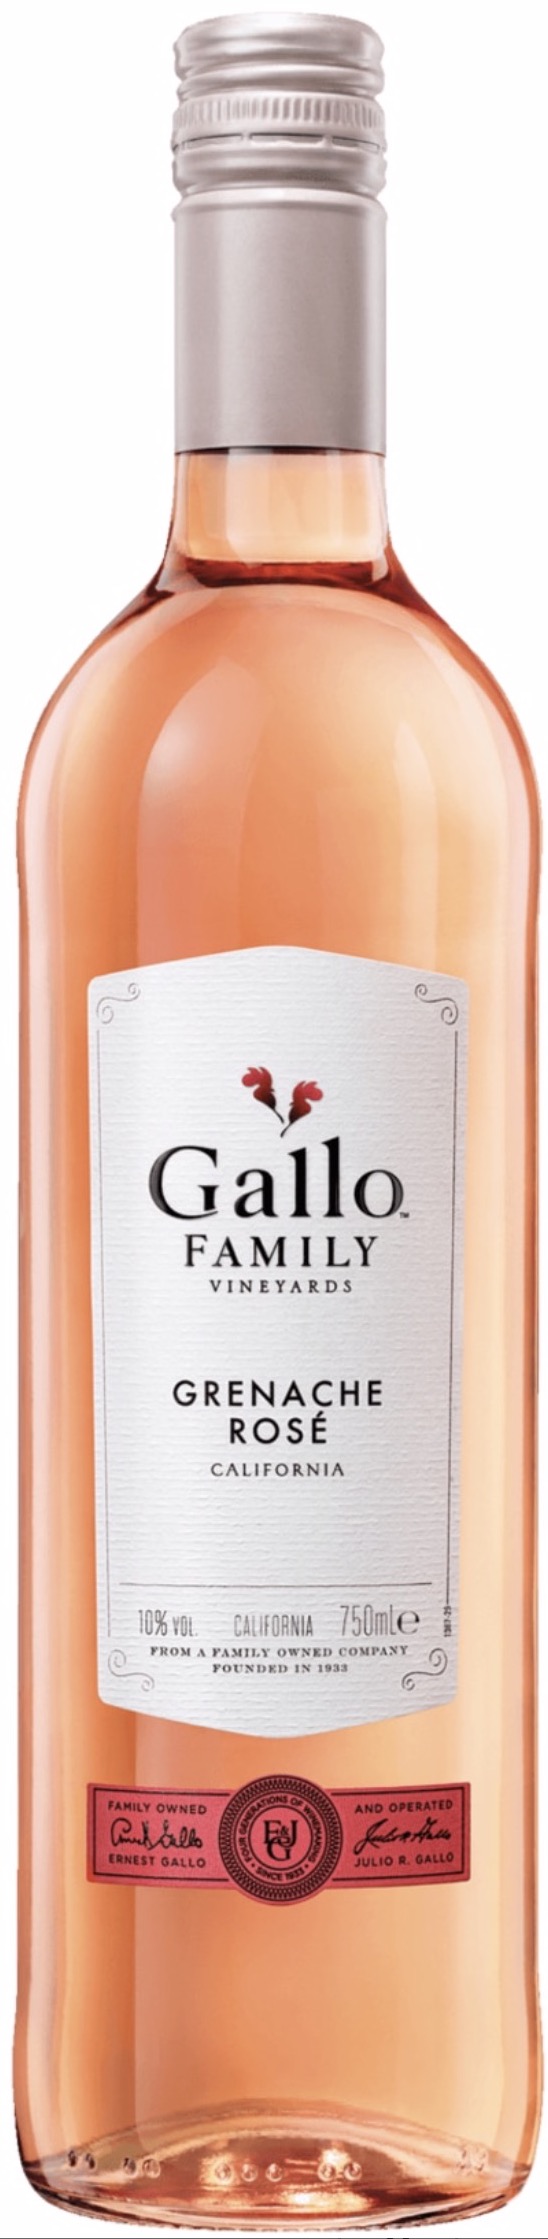 Gallo Family Rosé Grenache lieblich 10,5% vol. 0,75L